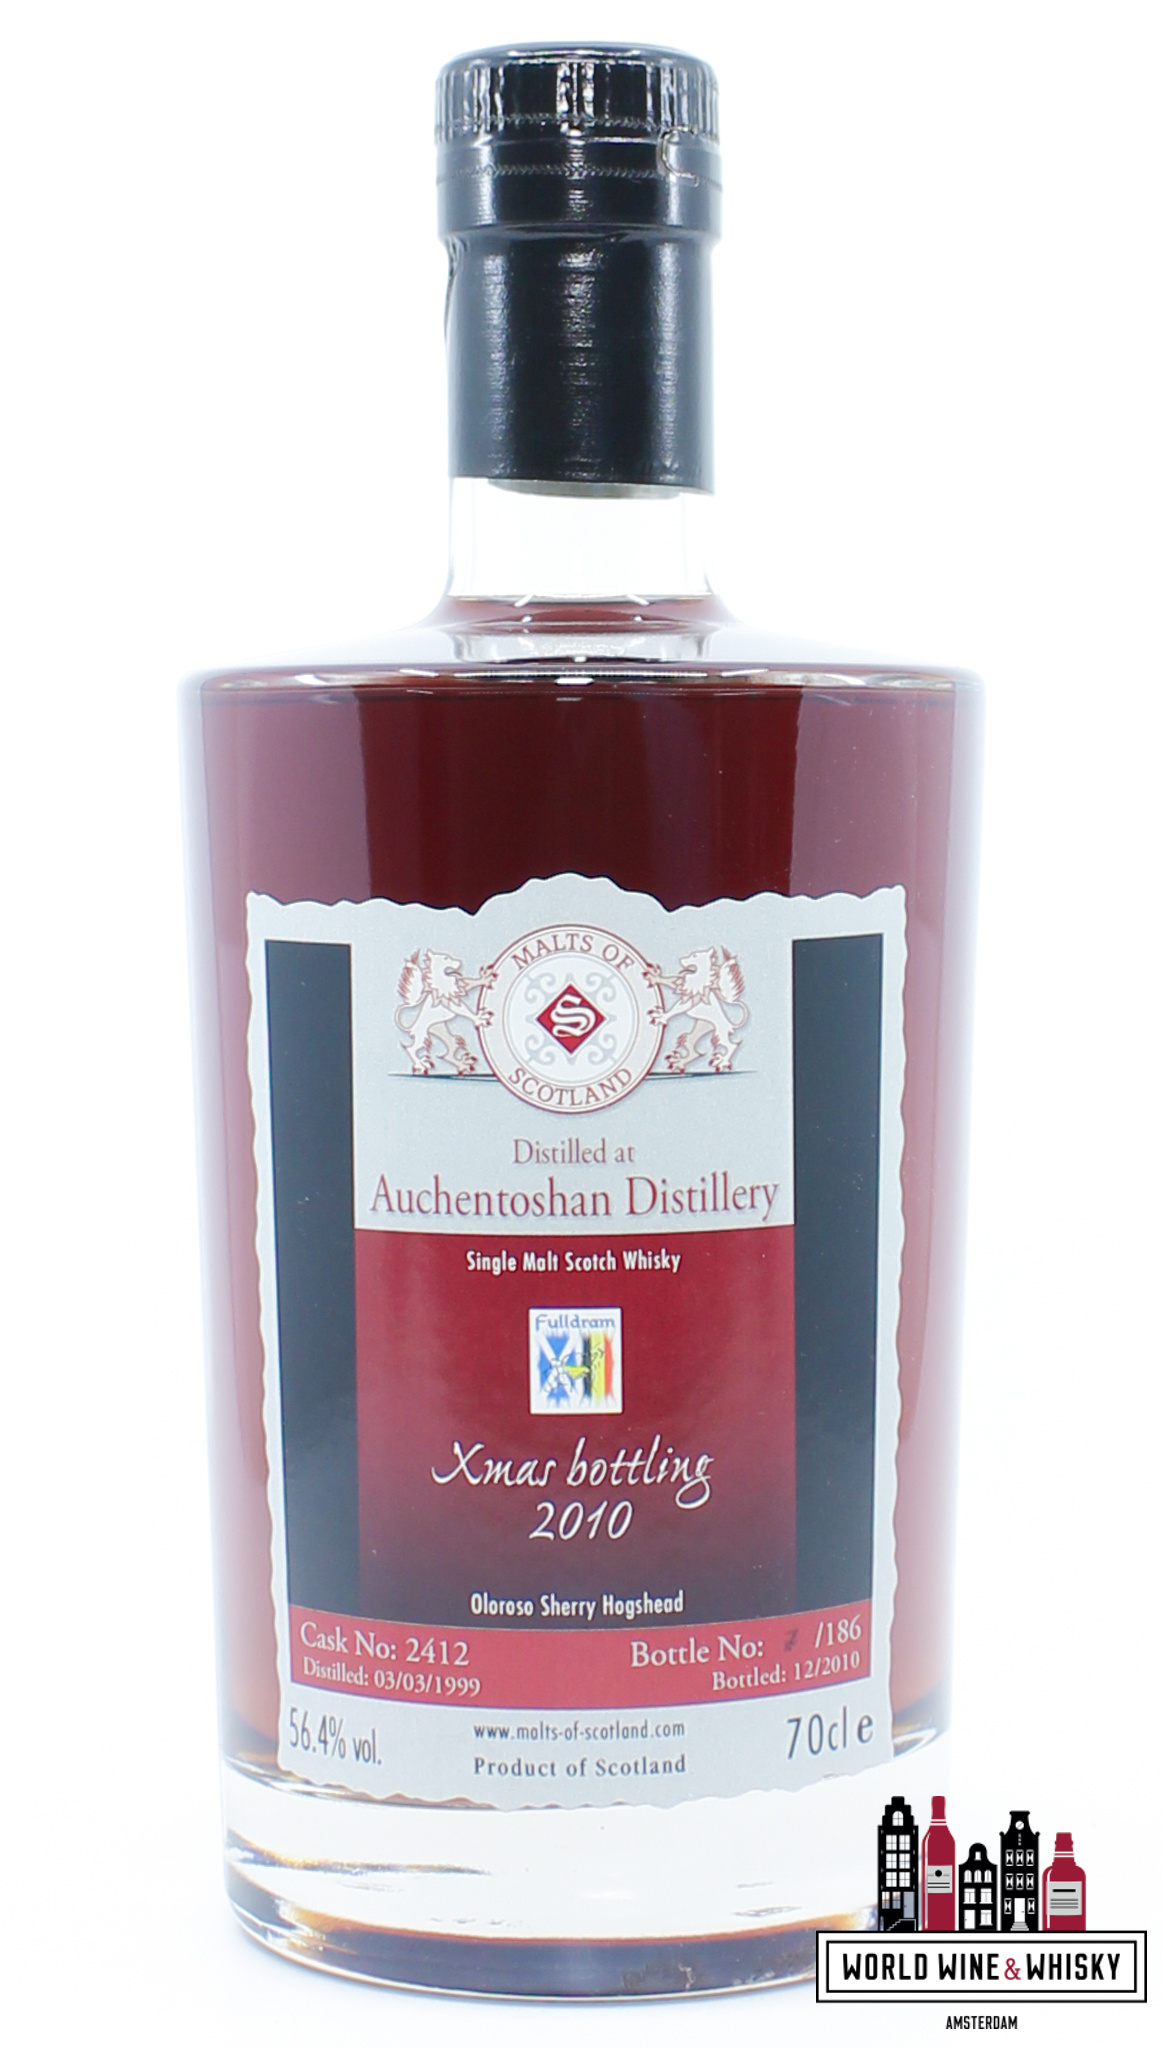 Auchentoshan Auchentoshan 1999 2010 - Cask 2412 - Malts of Scotland - Fulldram Xmas bottling 56.4% (1 of 186)